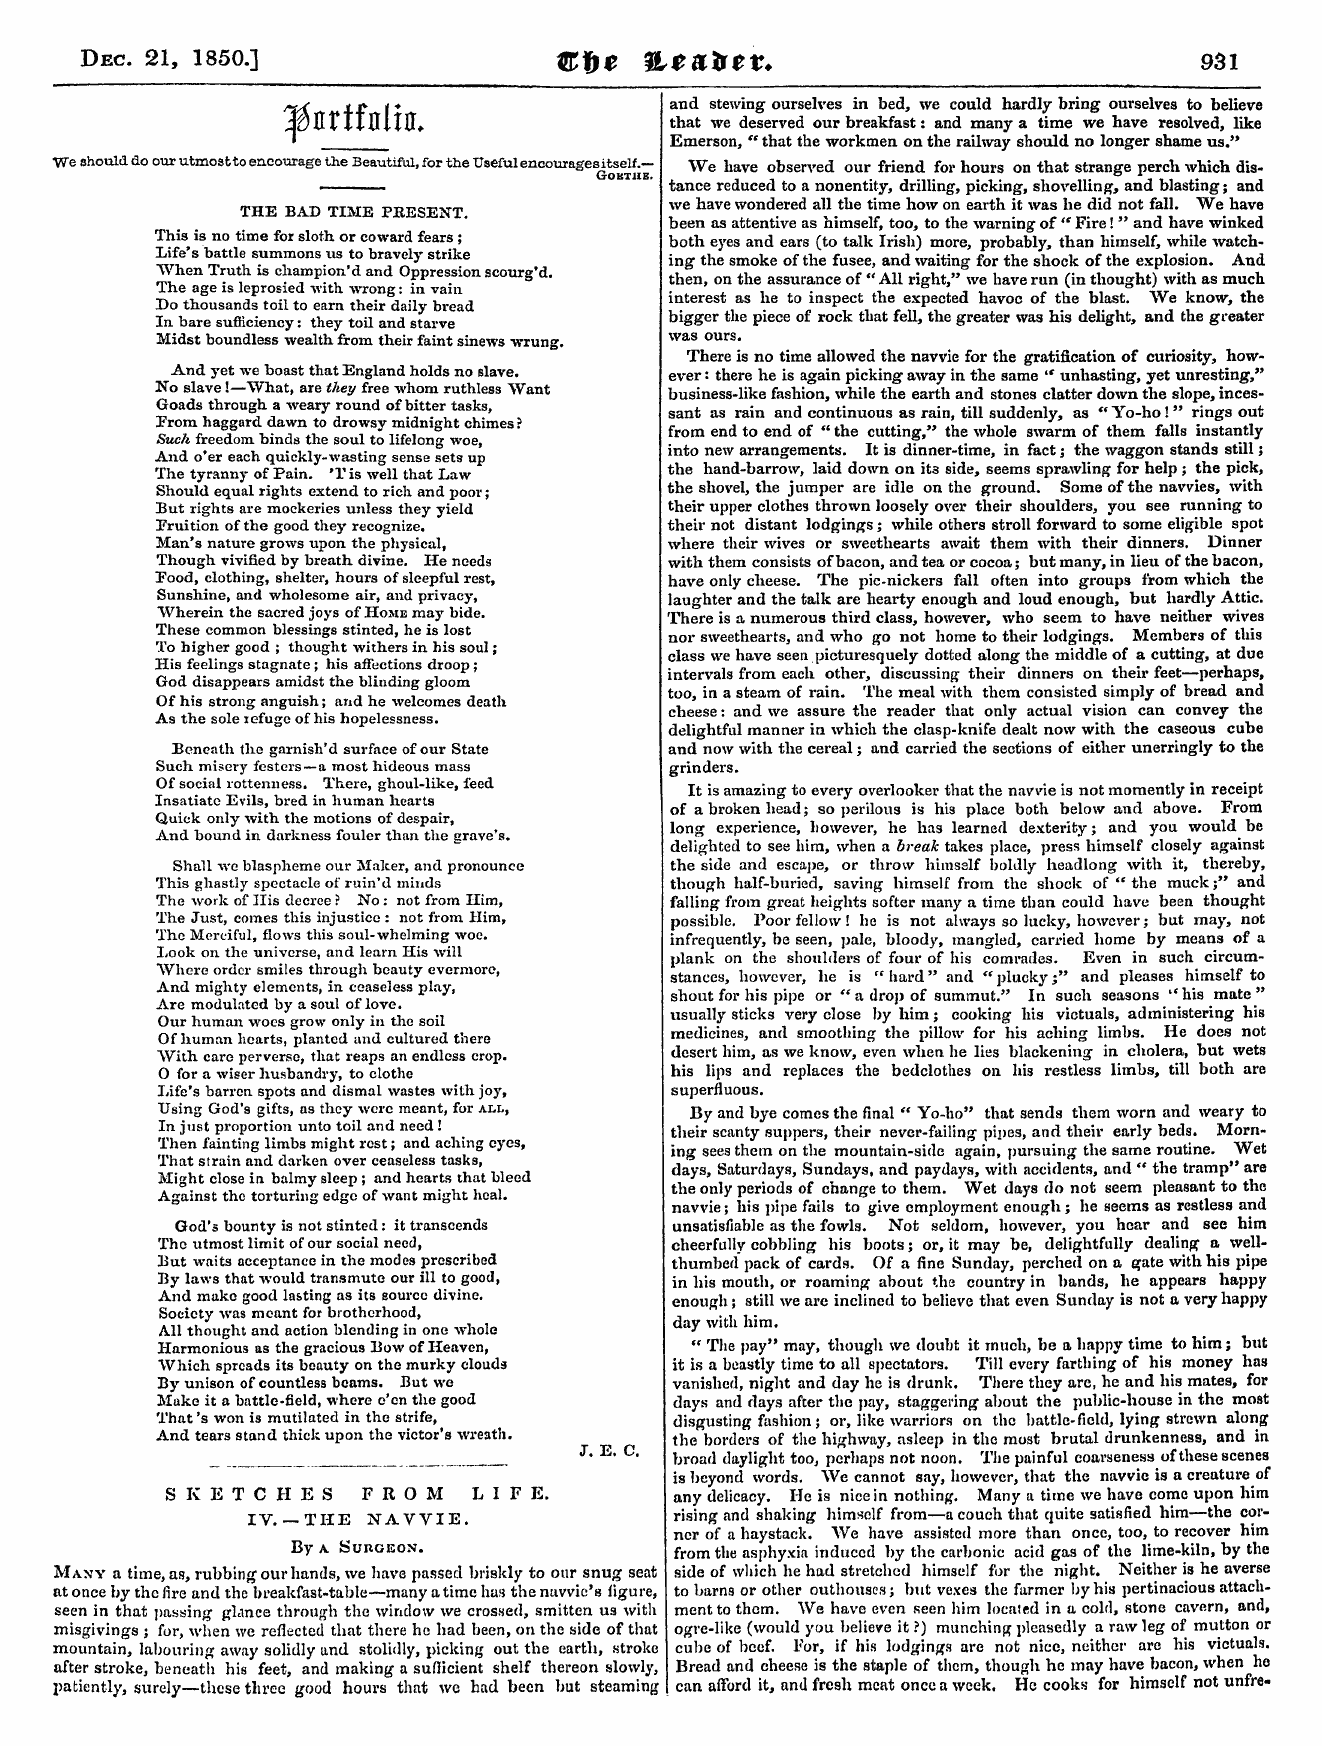 Leader (1850-1860): jS F Y, Country edition - /-5&Gt;^ | J^Hrlinitll. ¦